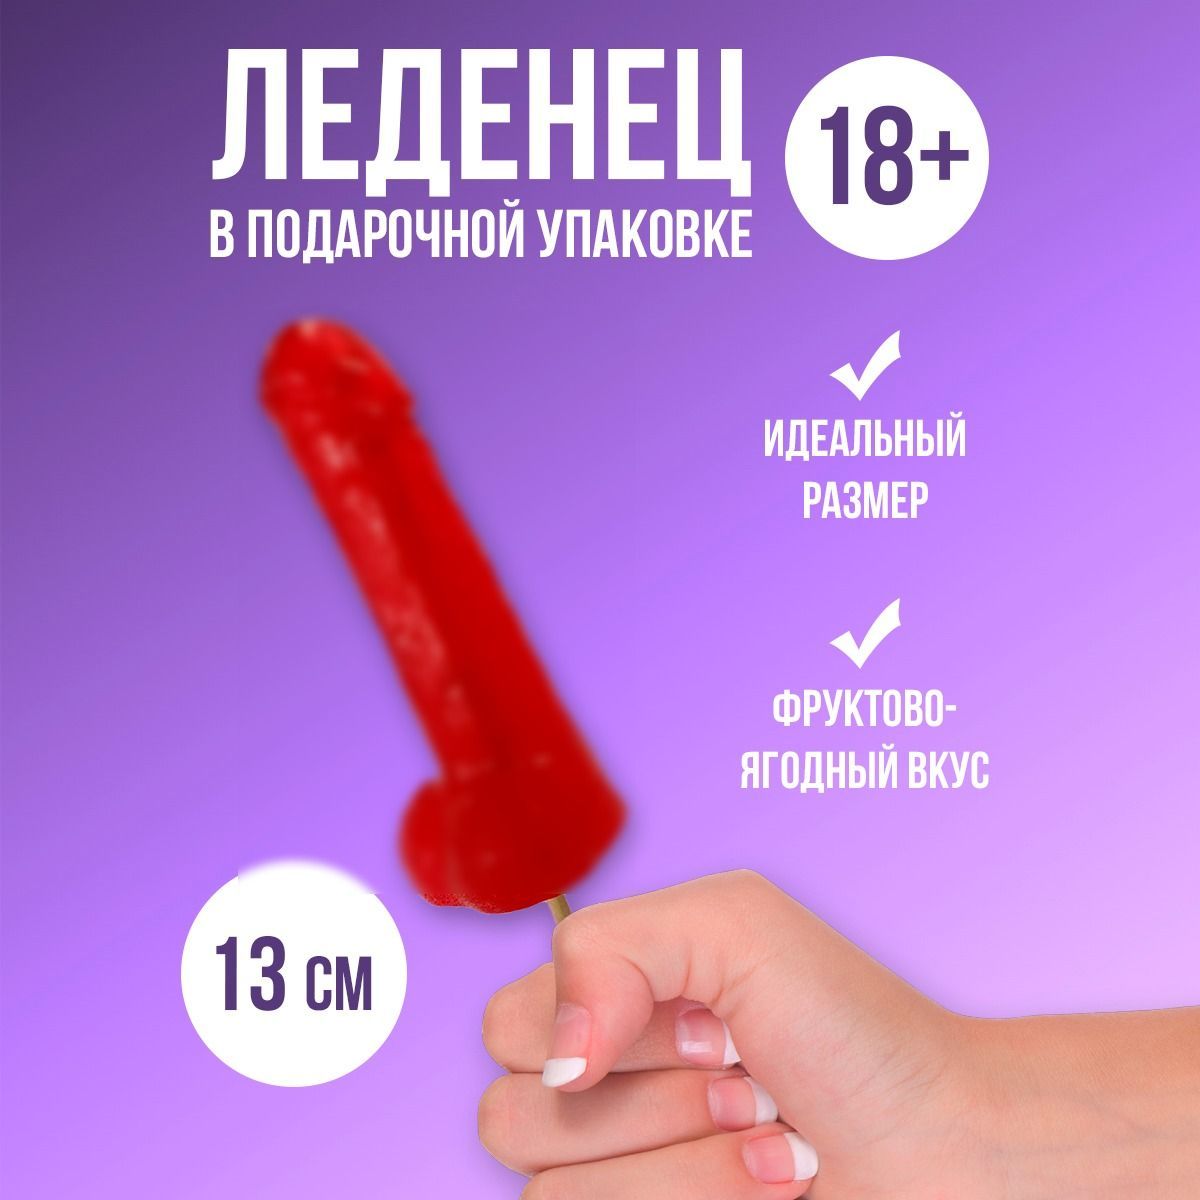 Сексуальный сладкий Секс видео / ecomamochka.ru ru